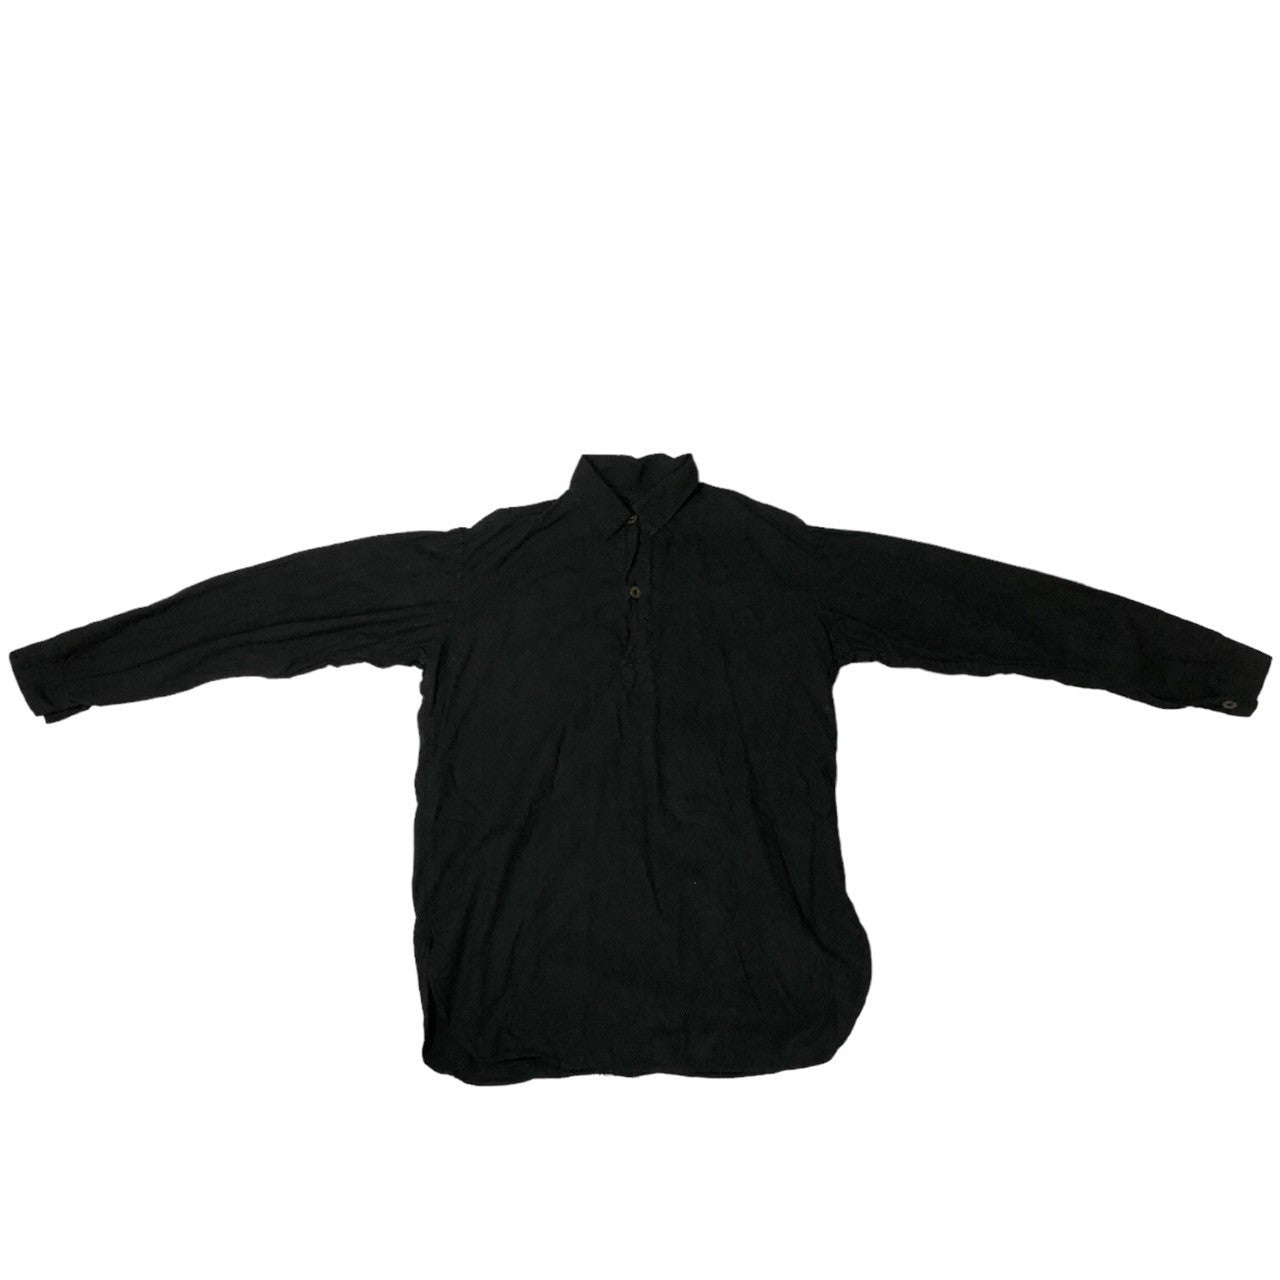 Euro vintage(ヨーロッパヴィンテージ) 80~90's VINTAGE pullover shirts ヴィンテージ プルオーバー シャツ グランパシャツ SIZE 41 ブラック